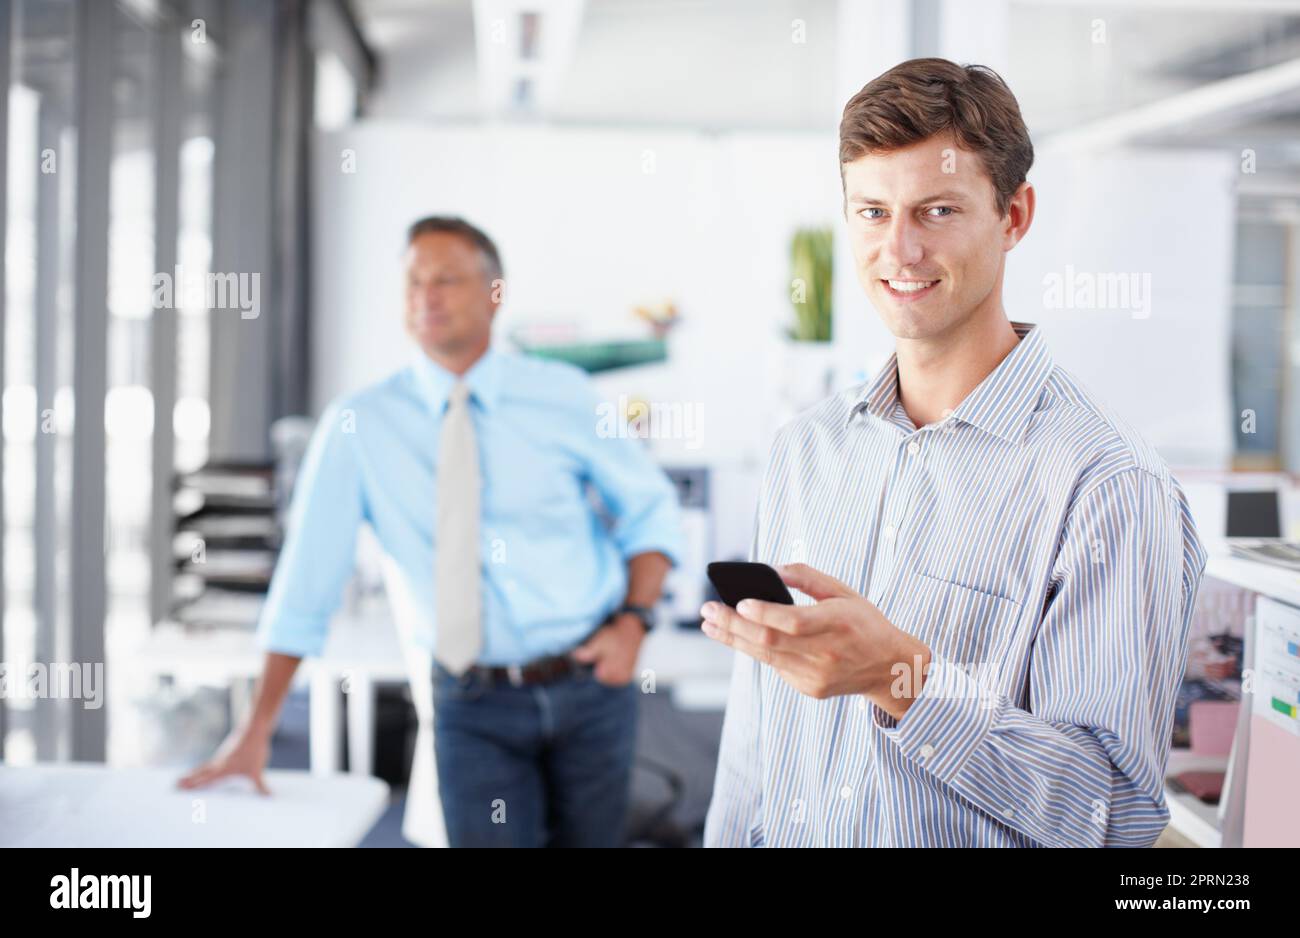 Utilisation des outils du métier. Un jeune professionnel tenant un smartphone tandis qu'un collègue se tient en arrière-plan. Banque D'Images